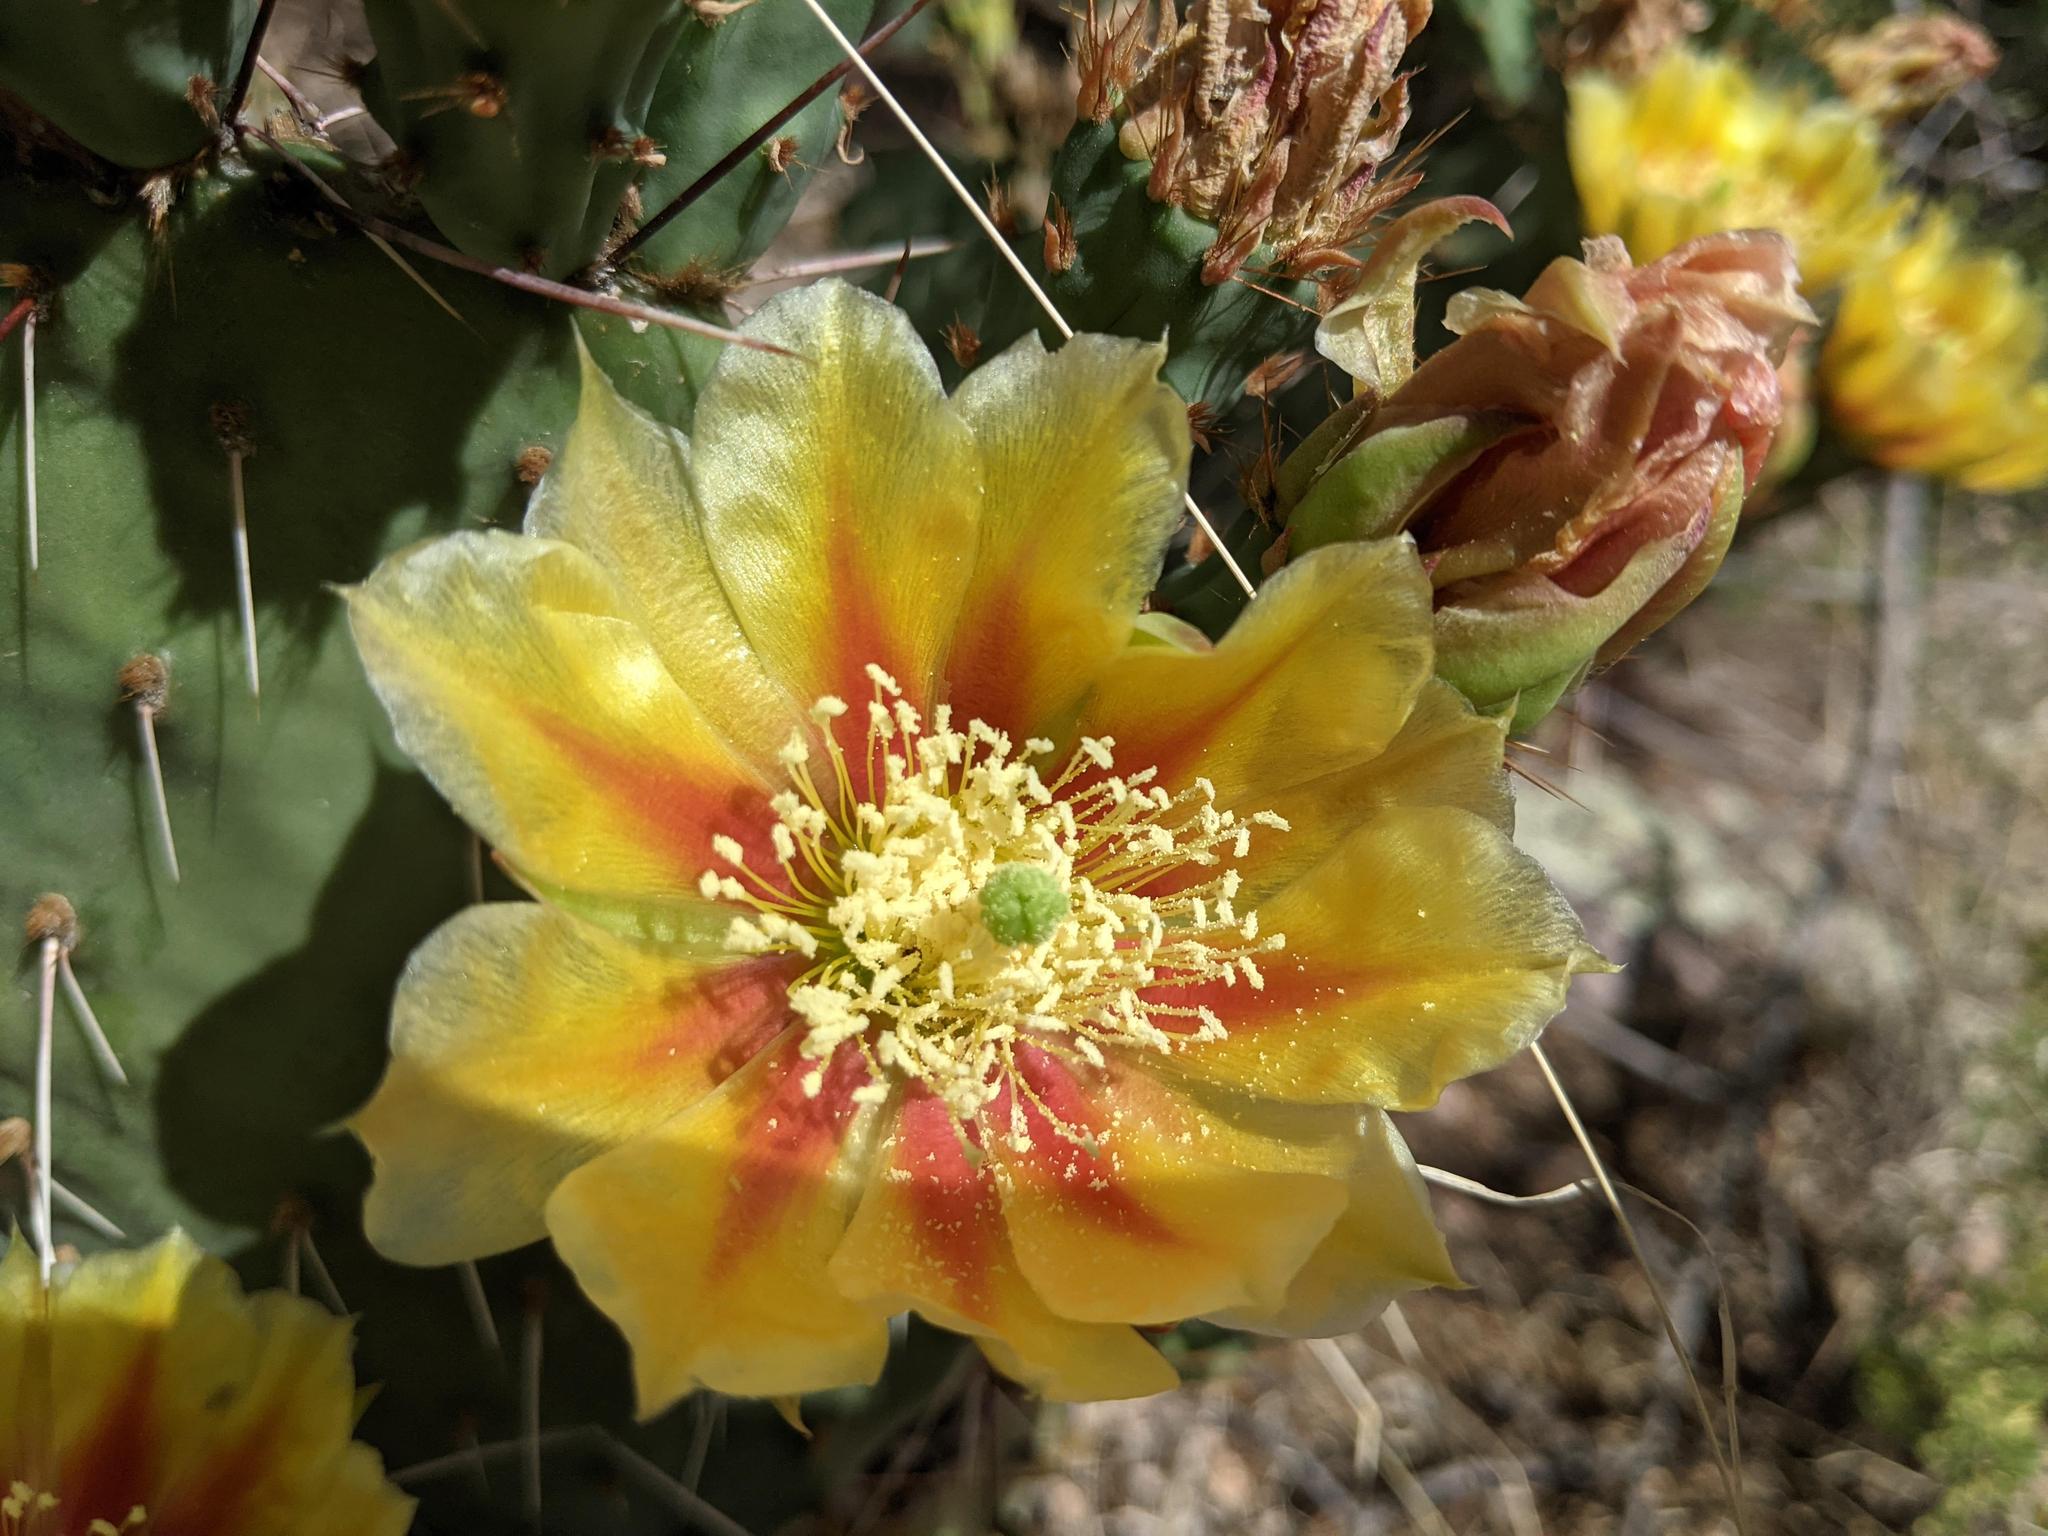 A native, spiny cactus